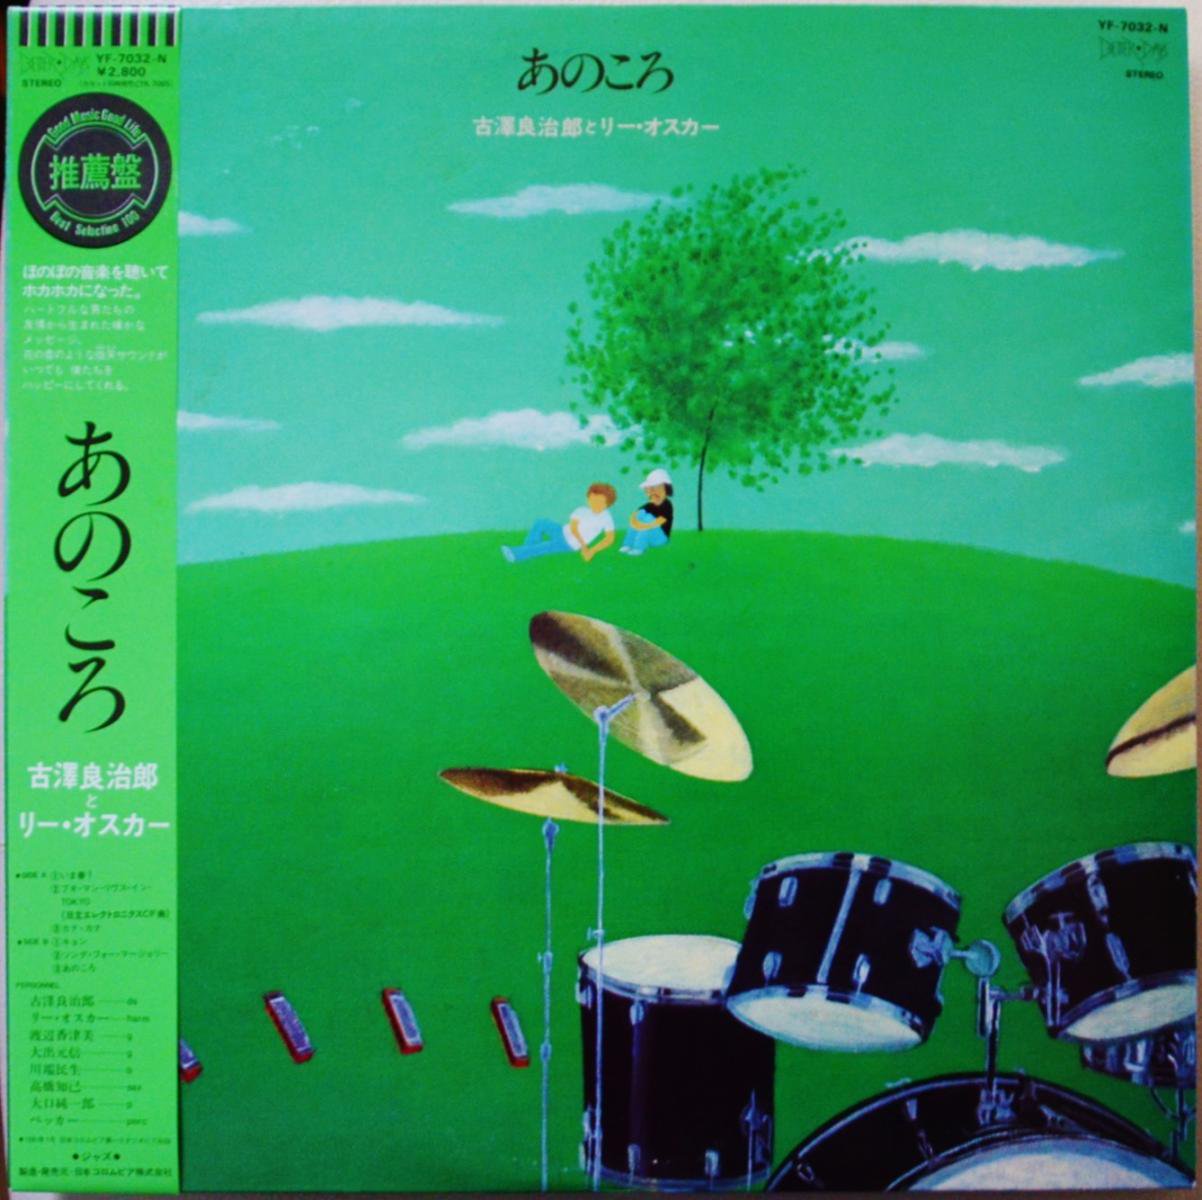 古澤良治郎とリー・オスカー RYOJIRO FURUSAWA & LEE OSKAR / あのころ (ANO KORO) (LP)